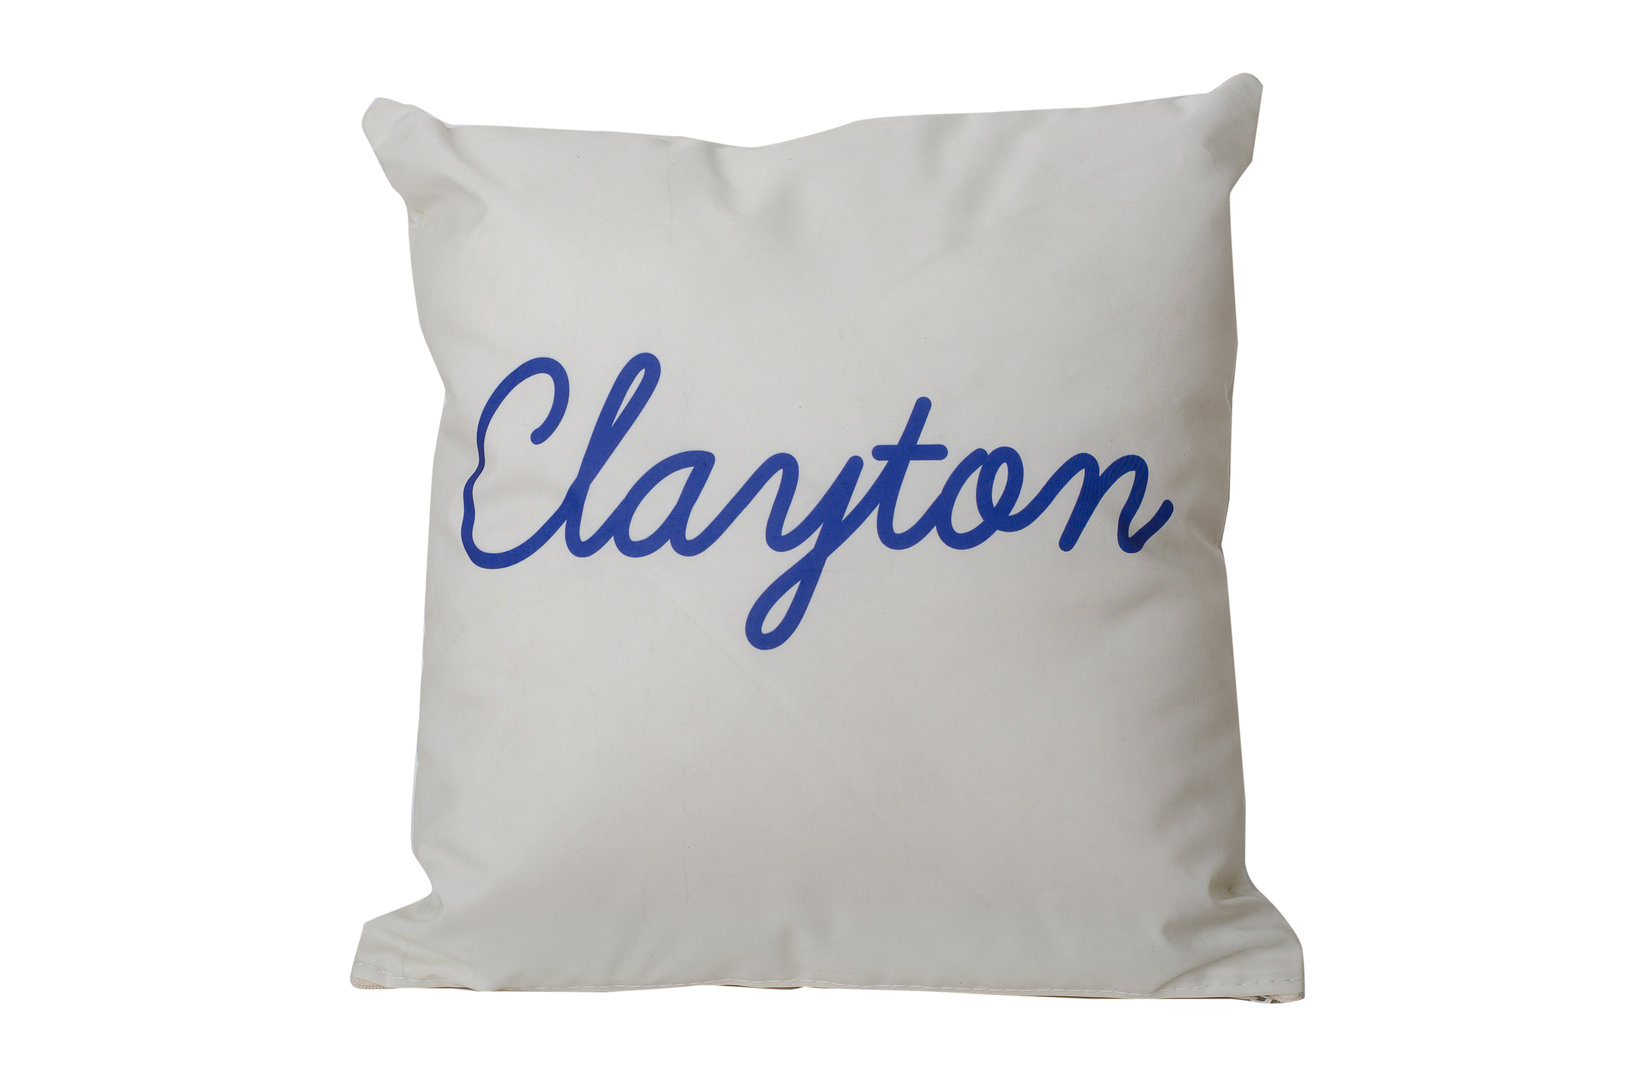 "Clayton" Pillow